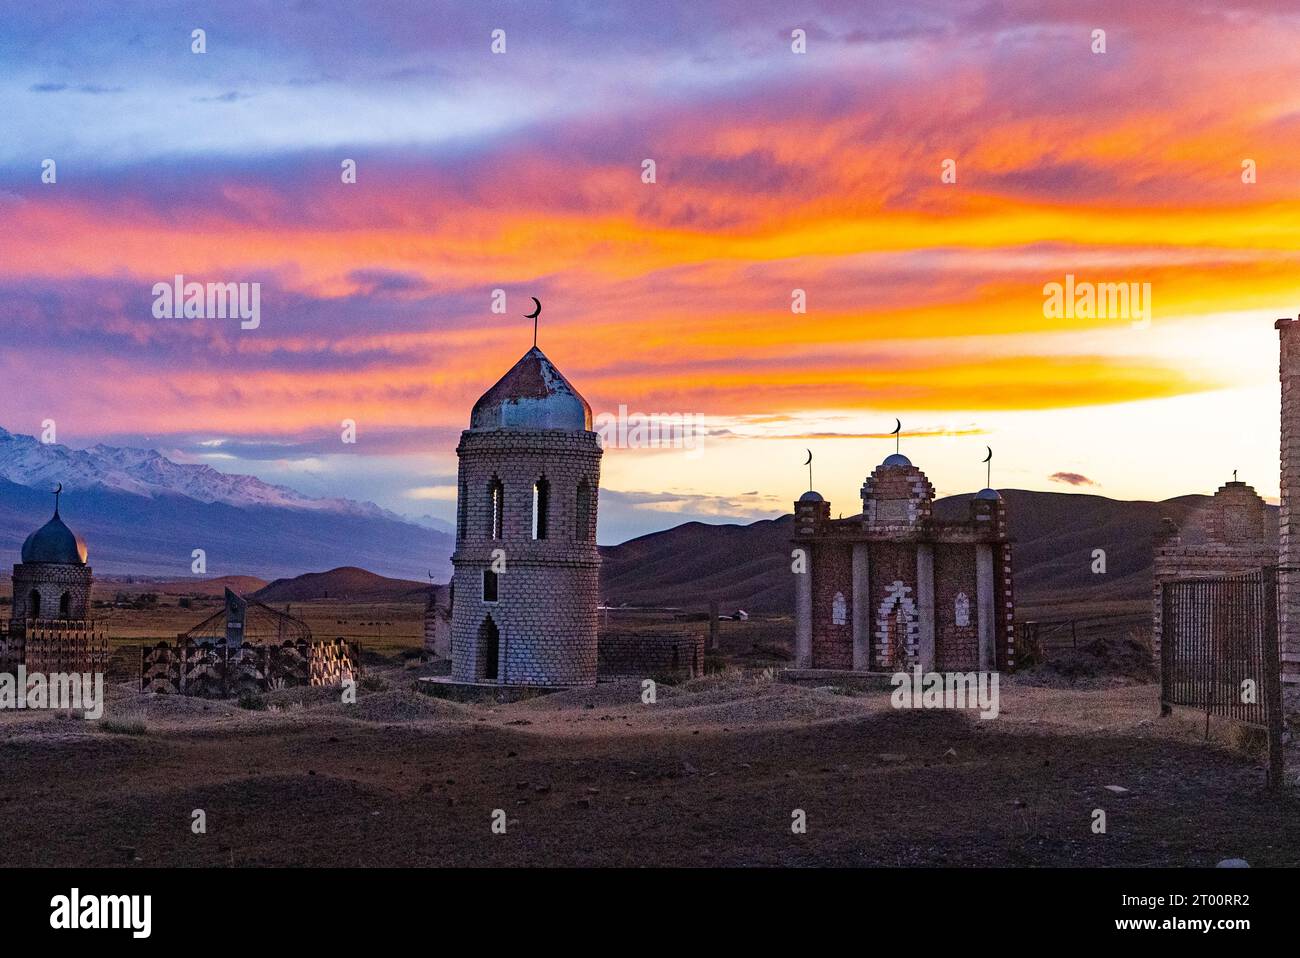 Cimiteri musulmani tradizionali fuori dai villaggi in Kirghizistan Foto Stock